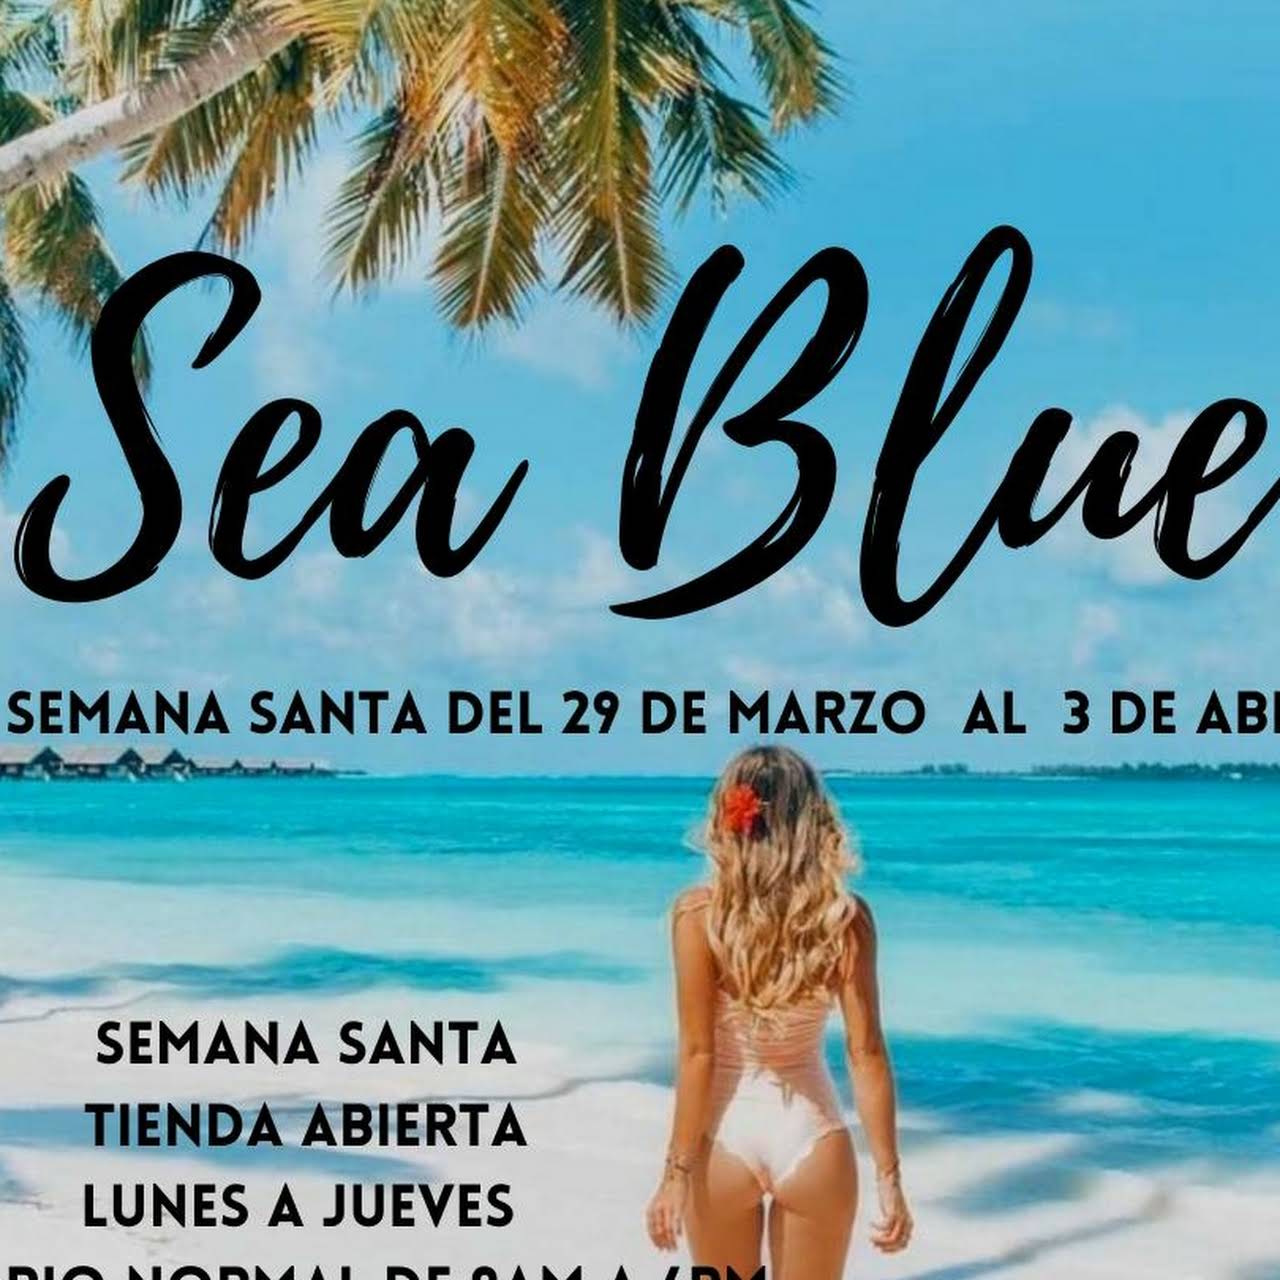 Sea Blue trajes de baño - Tienda Trajes De Baño